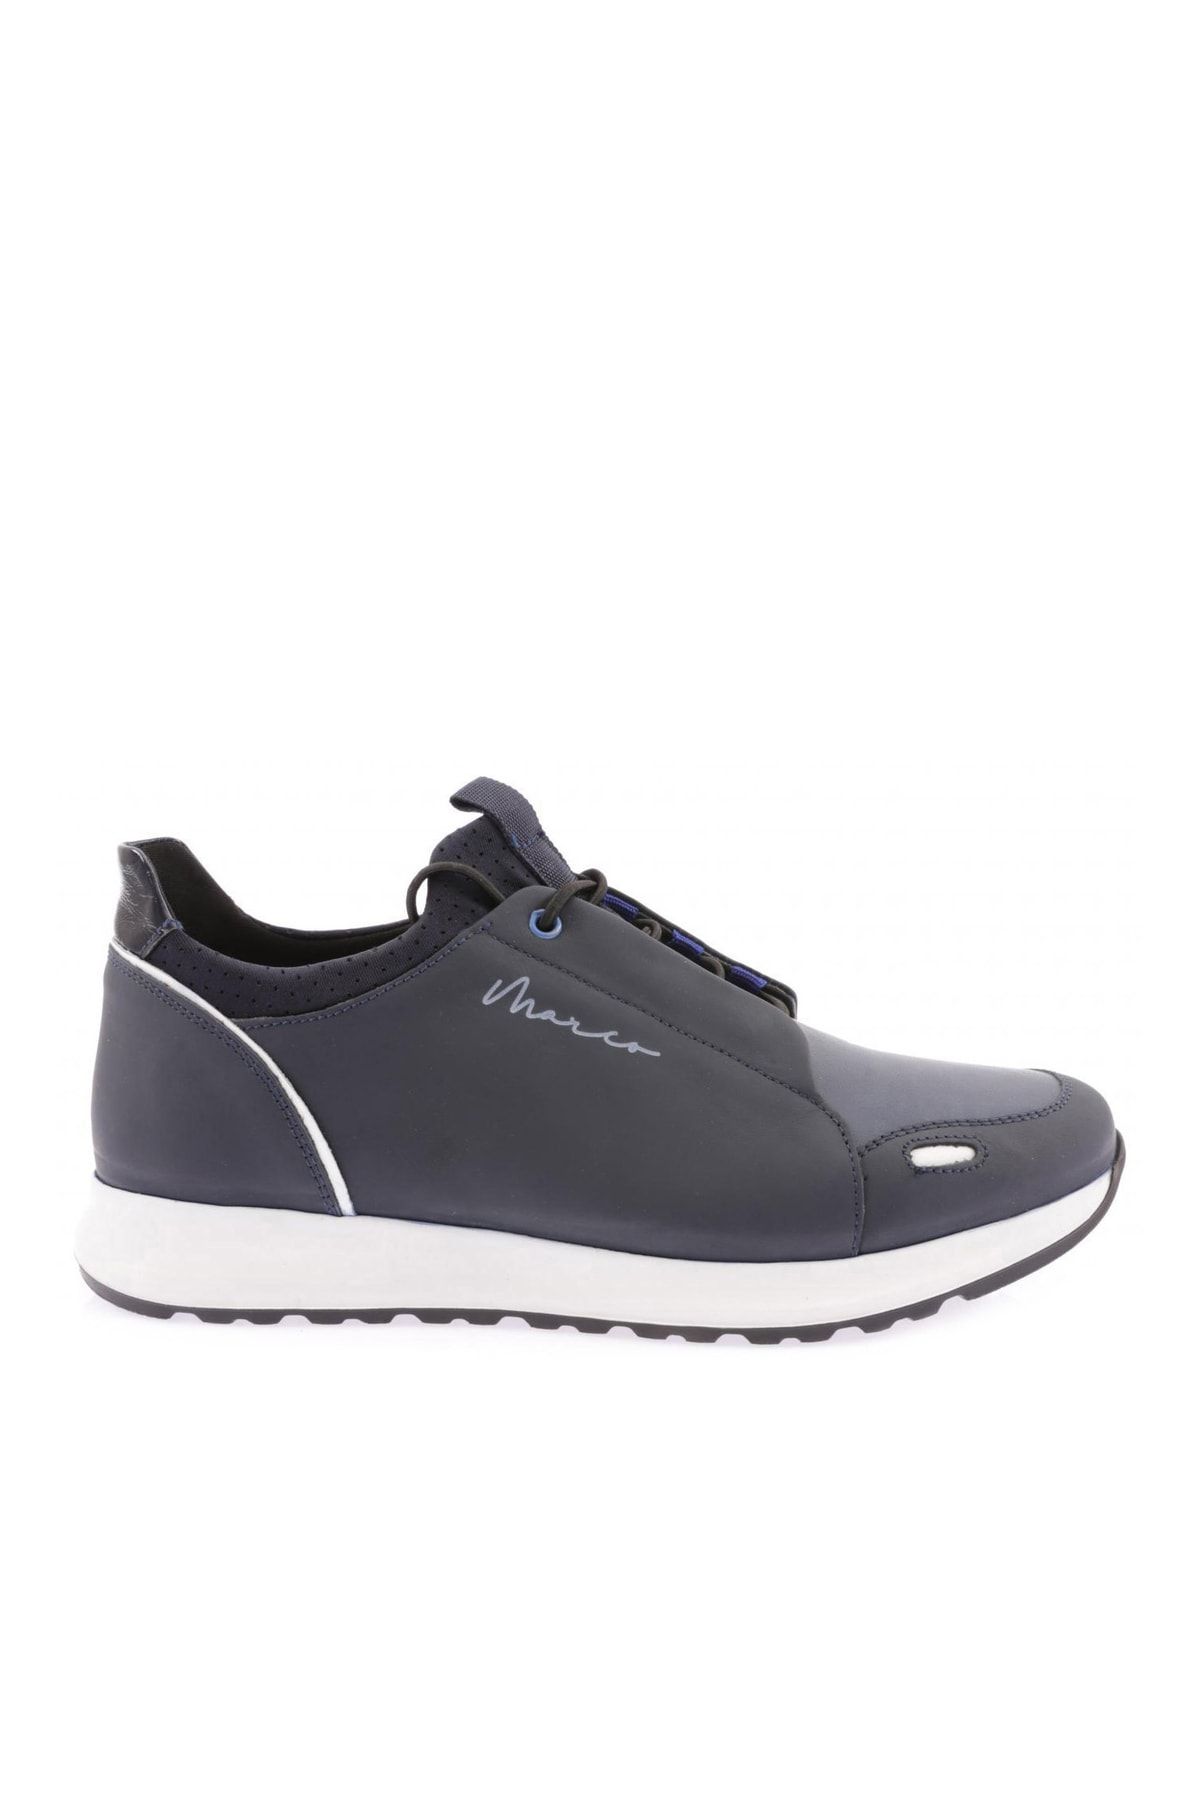 Dgn Lacivert - 15411-22y Erkek Bağcıklı Casual Sneakers Ayakkabı